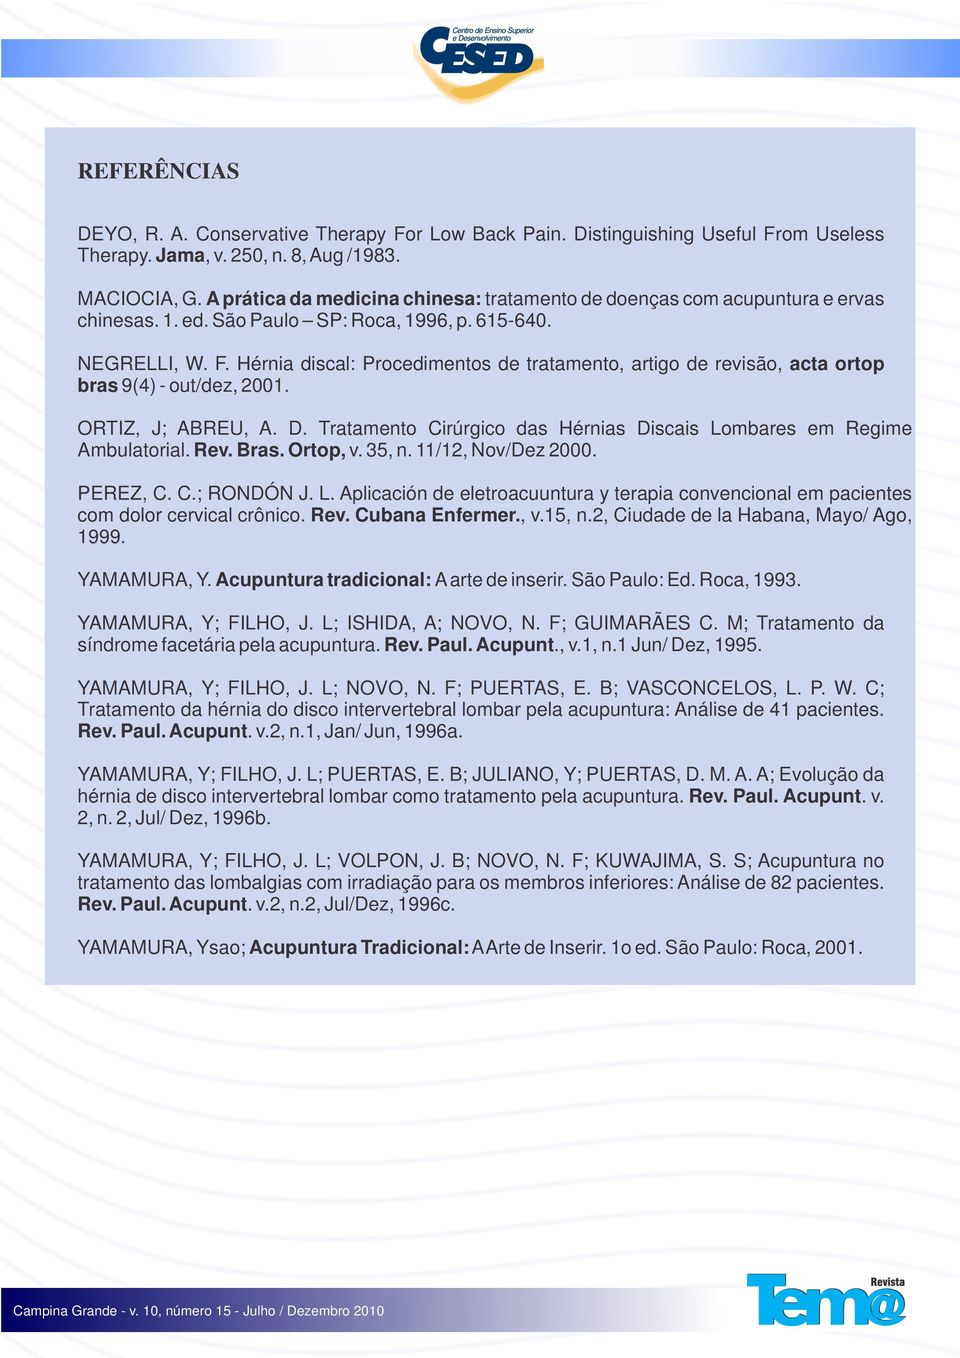 Hérnia discal: Procedimentos de tratamento, artigo de revisão, acta ortop bras 9(4) - out/dez, 2001. ORTIZ, J; ABREU, A. D. Tratamento Cirúrgico das Hérnias Discais Lombares em Regime Ambulatorial.